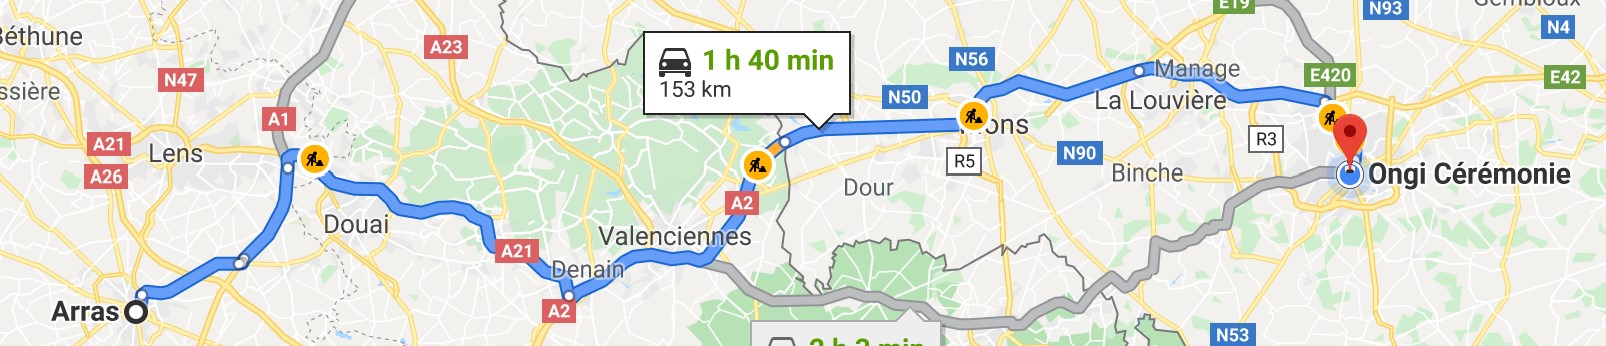 itinéraire Arras